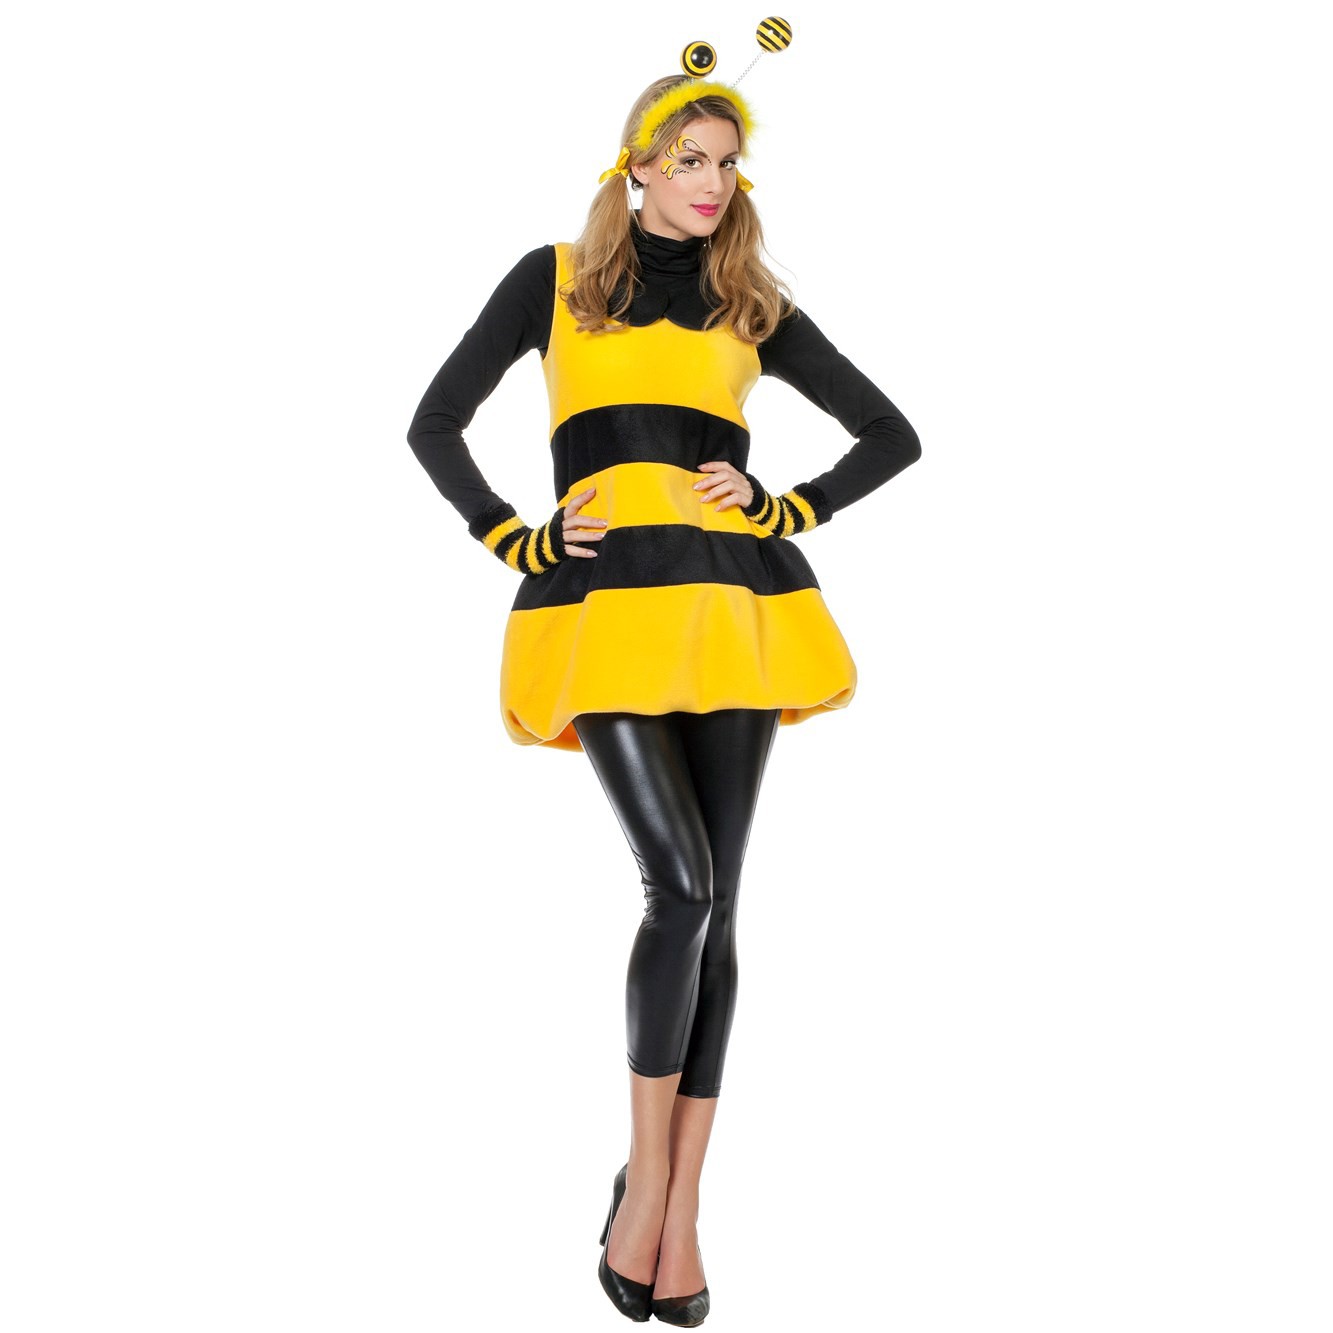 Человек в костюме пчелы